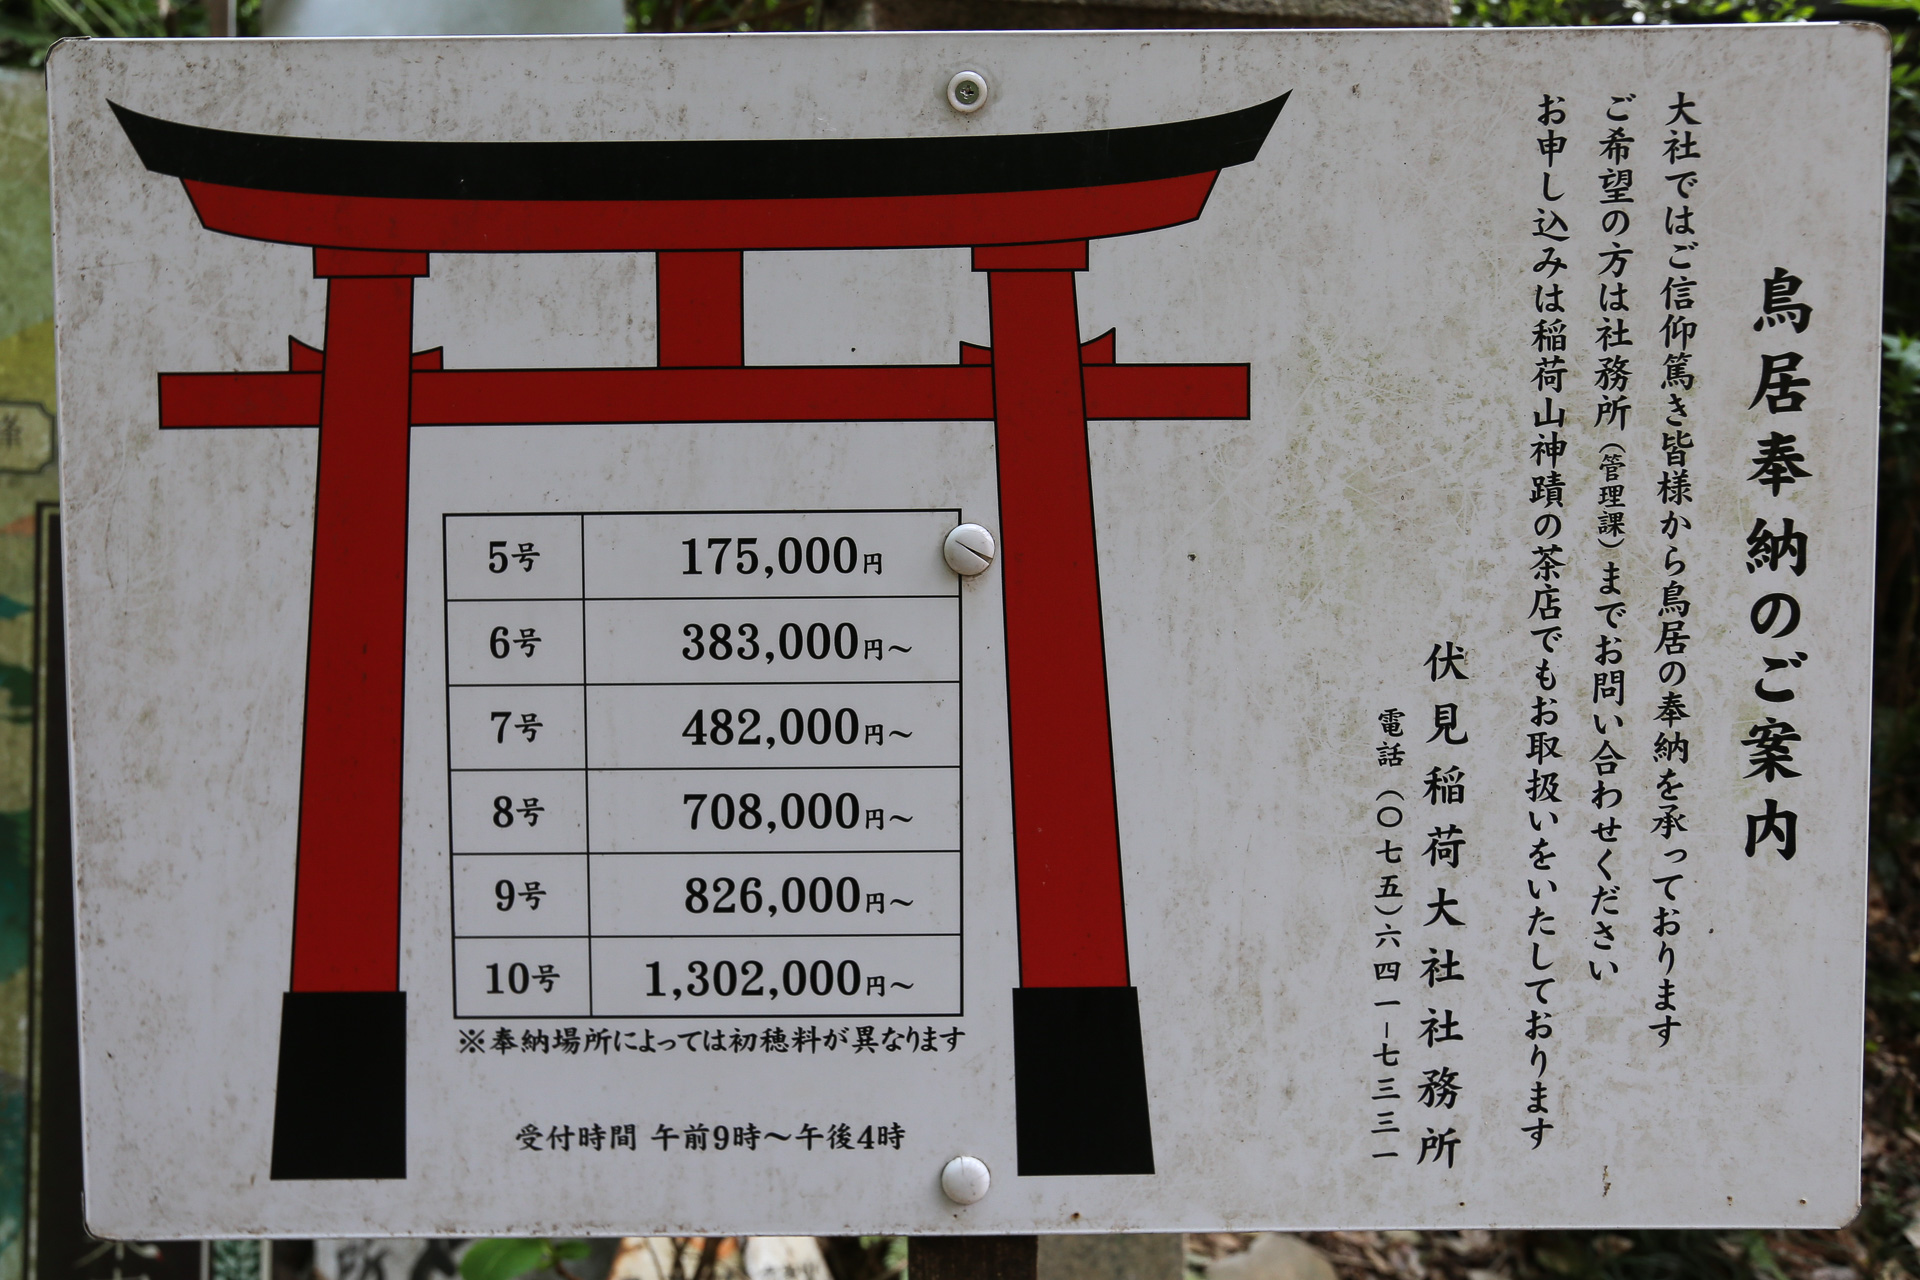 tarification officielle suivant la taille des torii - Kyoto